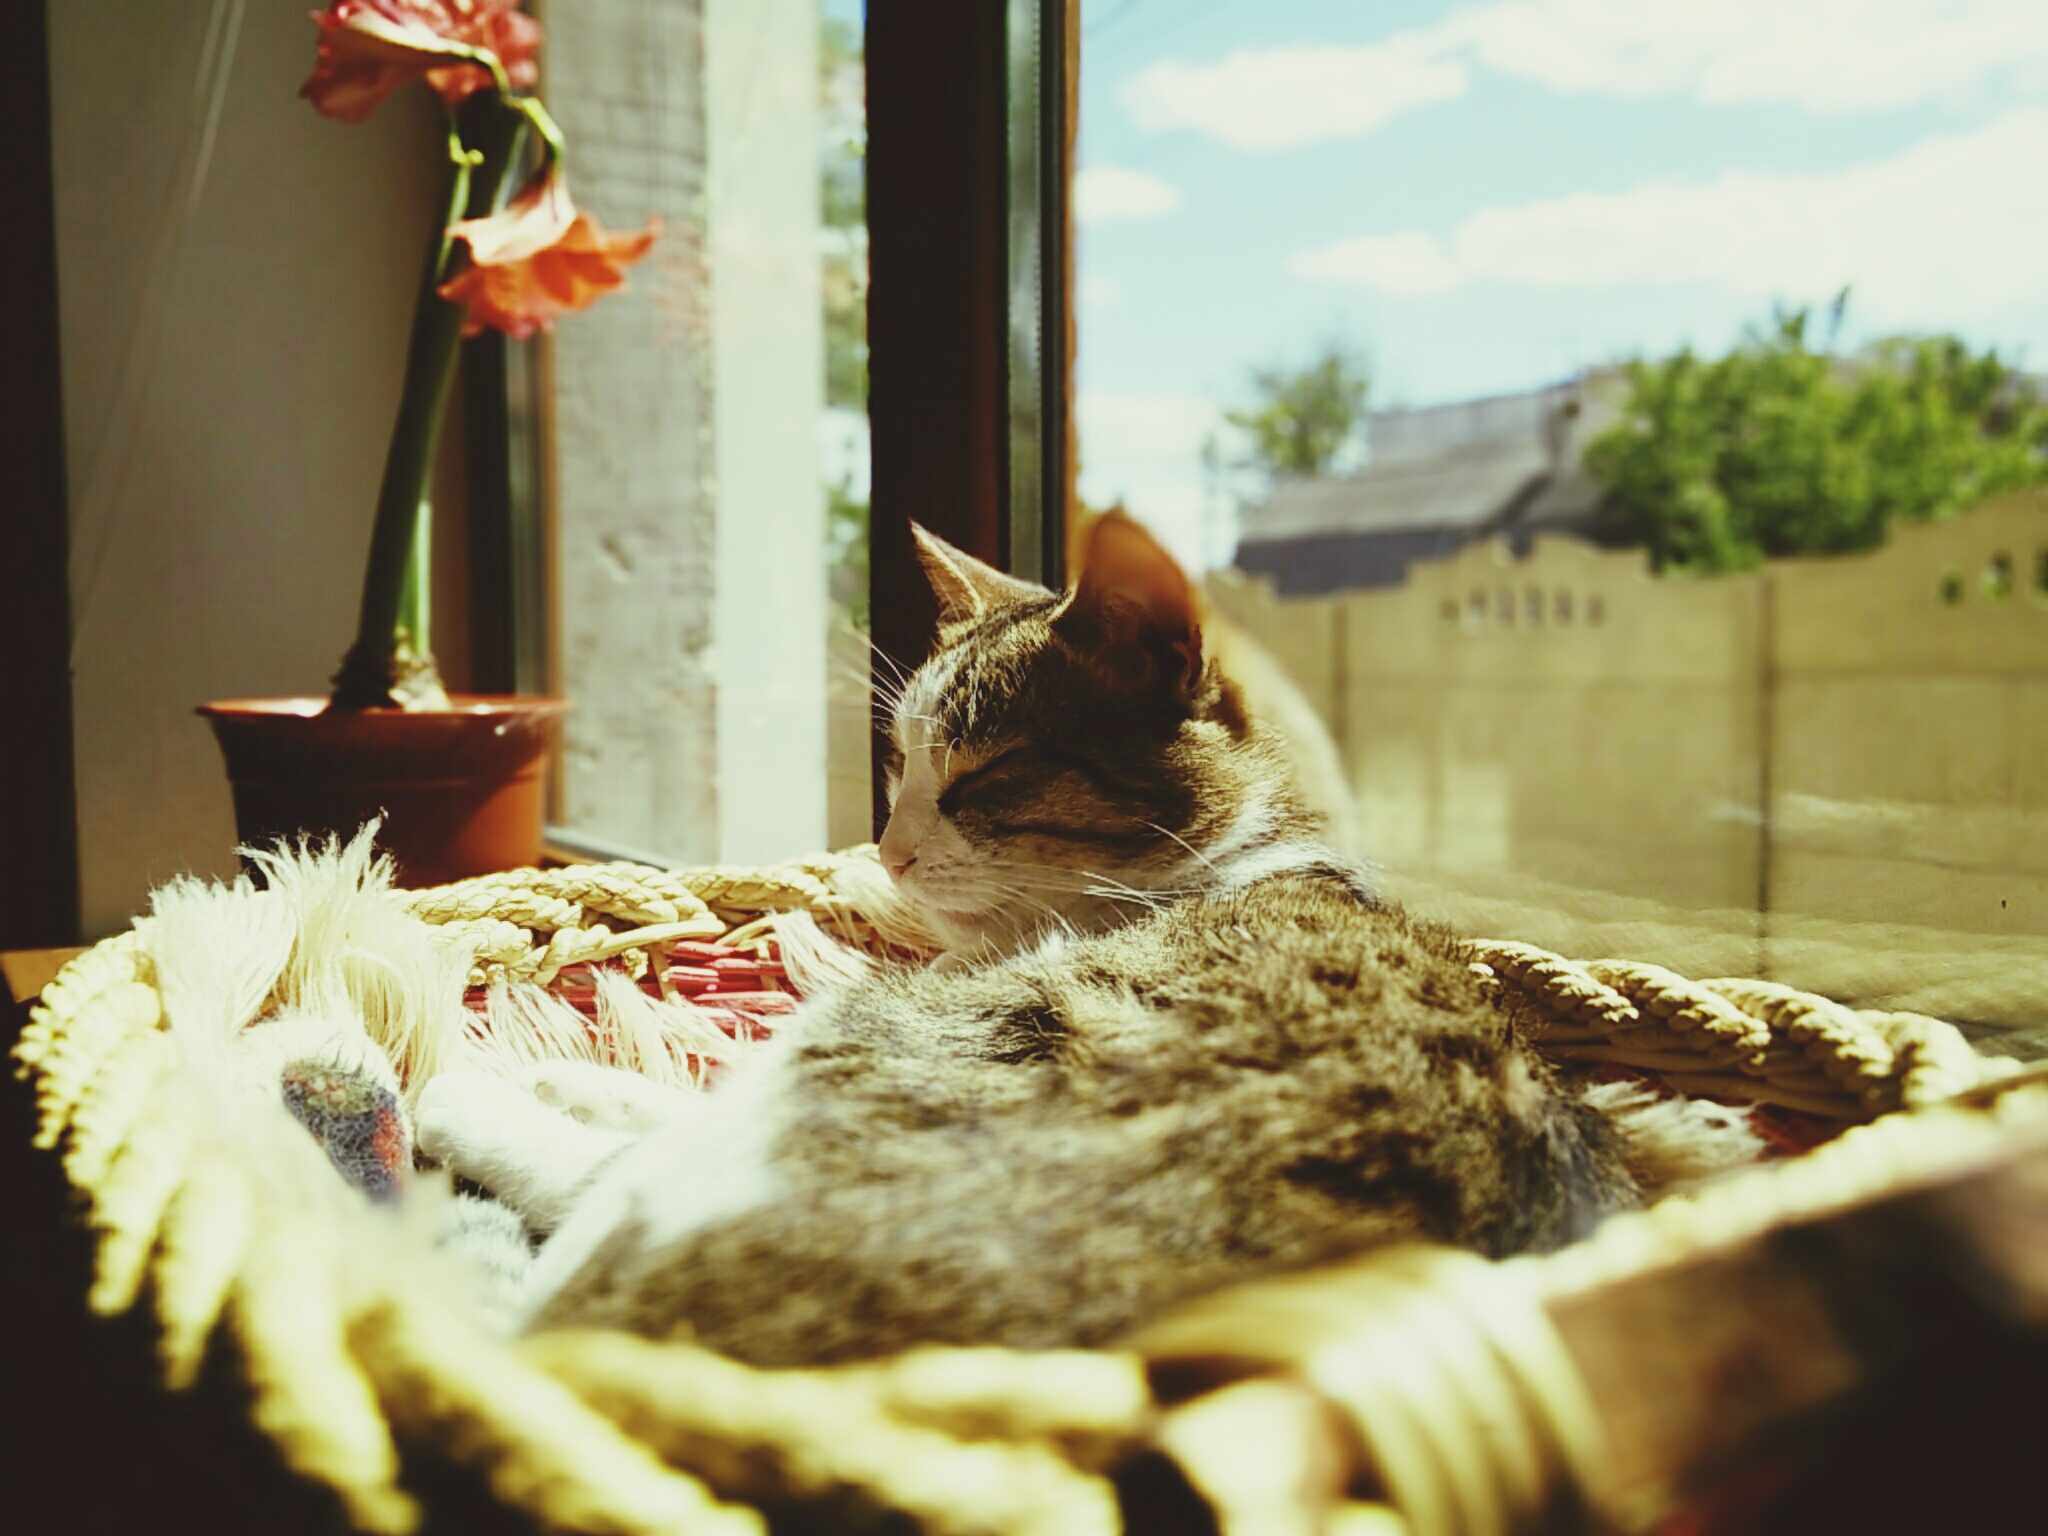 Cat sleeping in a basket by a glass window